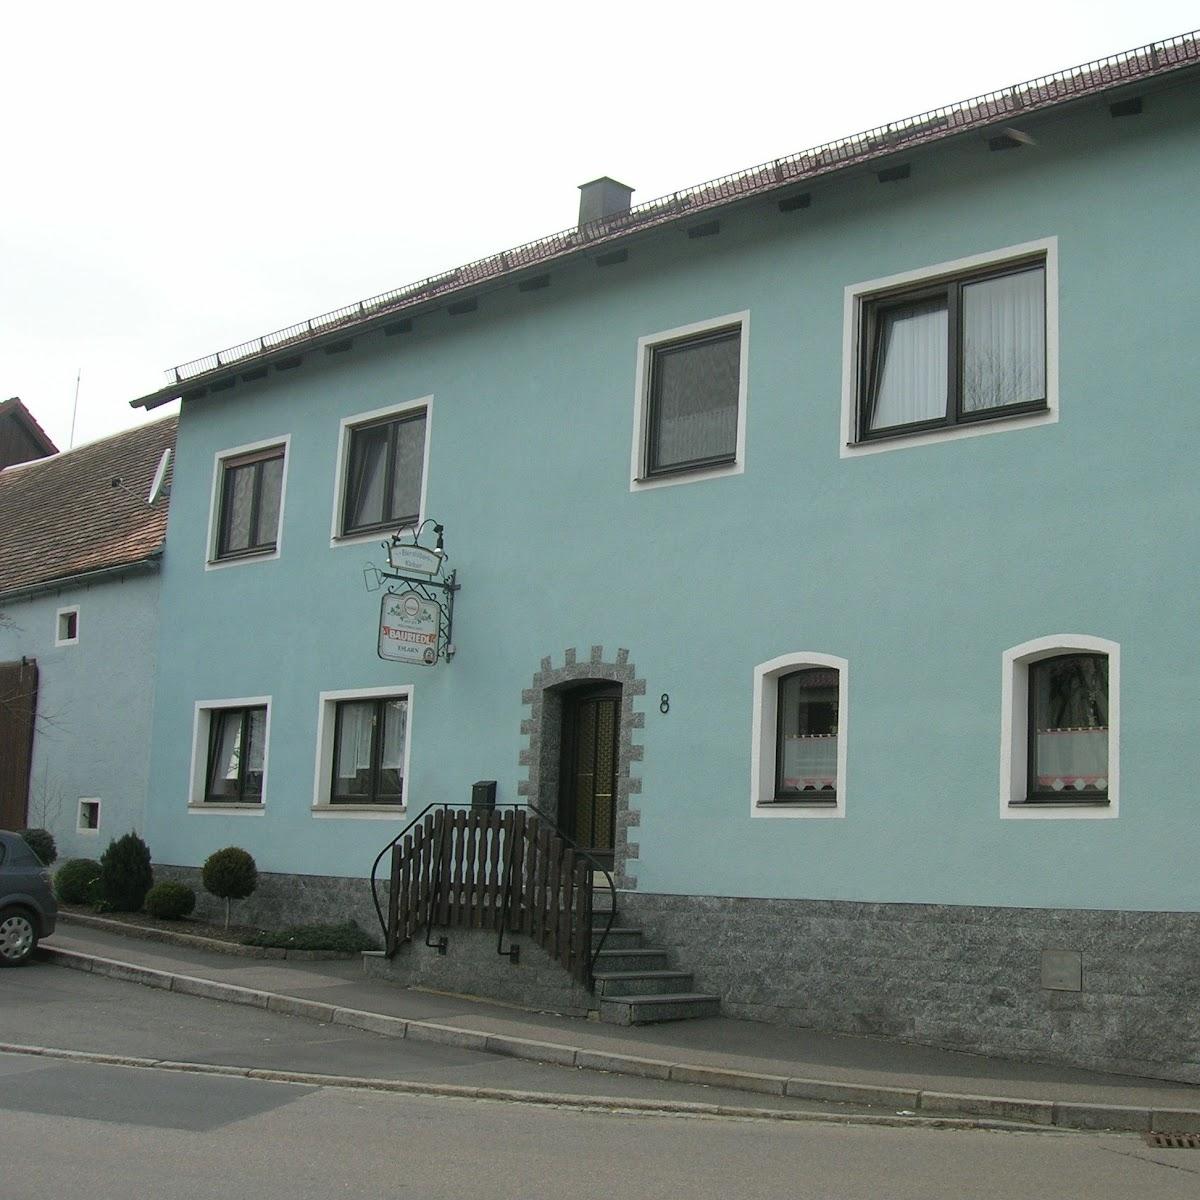 Restaurant "Bierstüberl Dainsen" in Eslarn